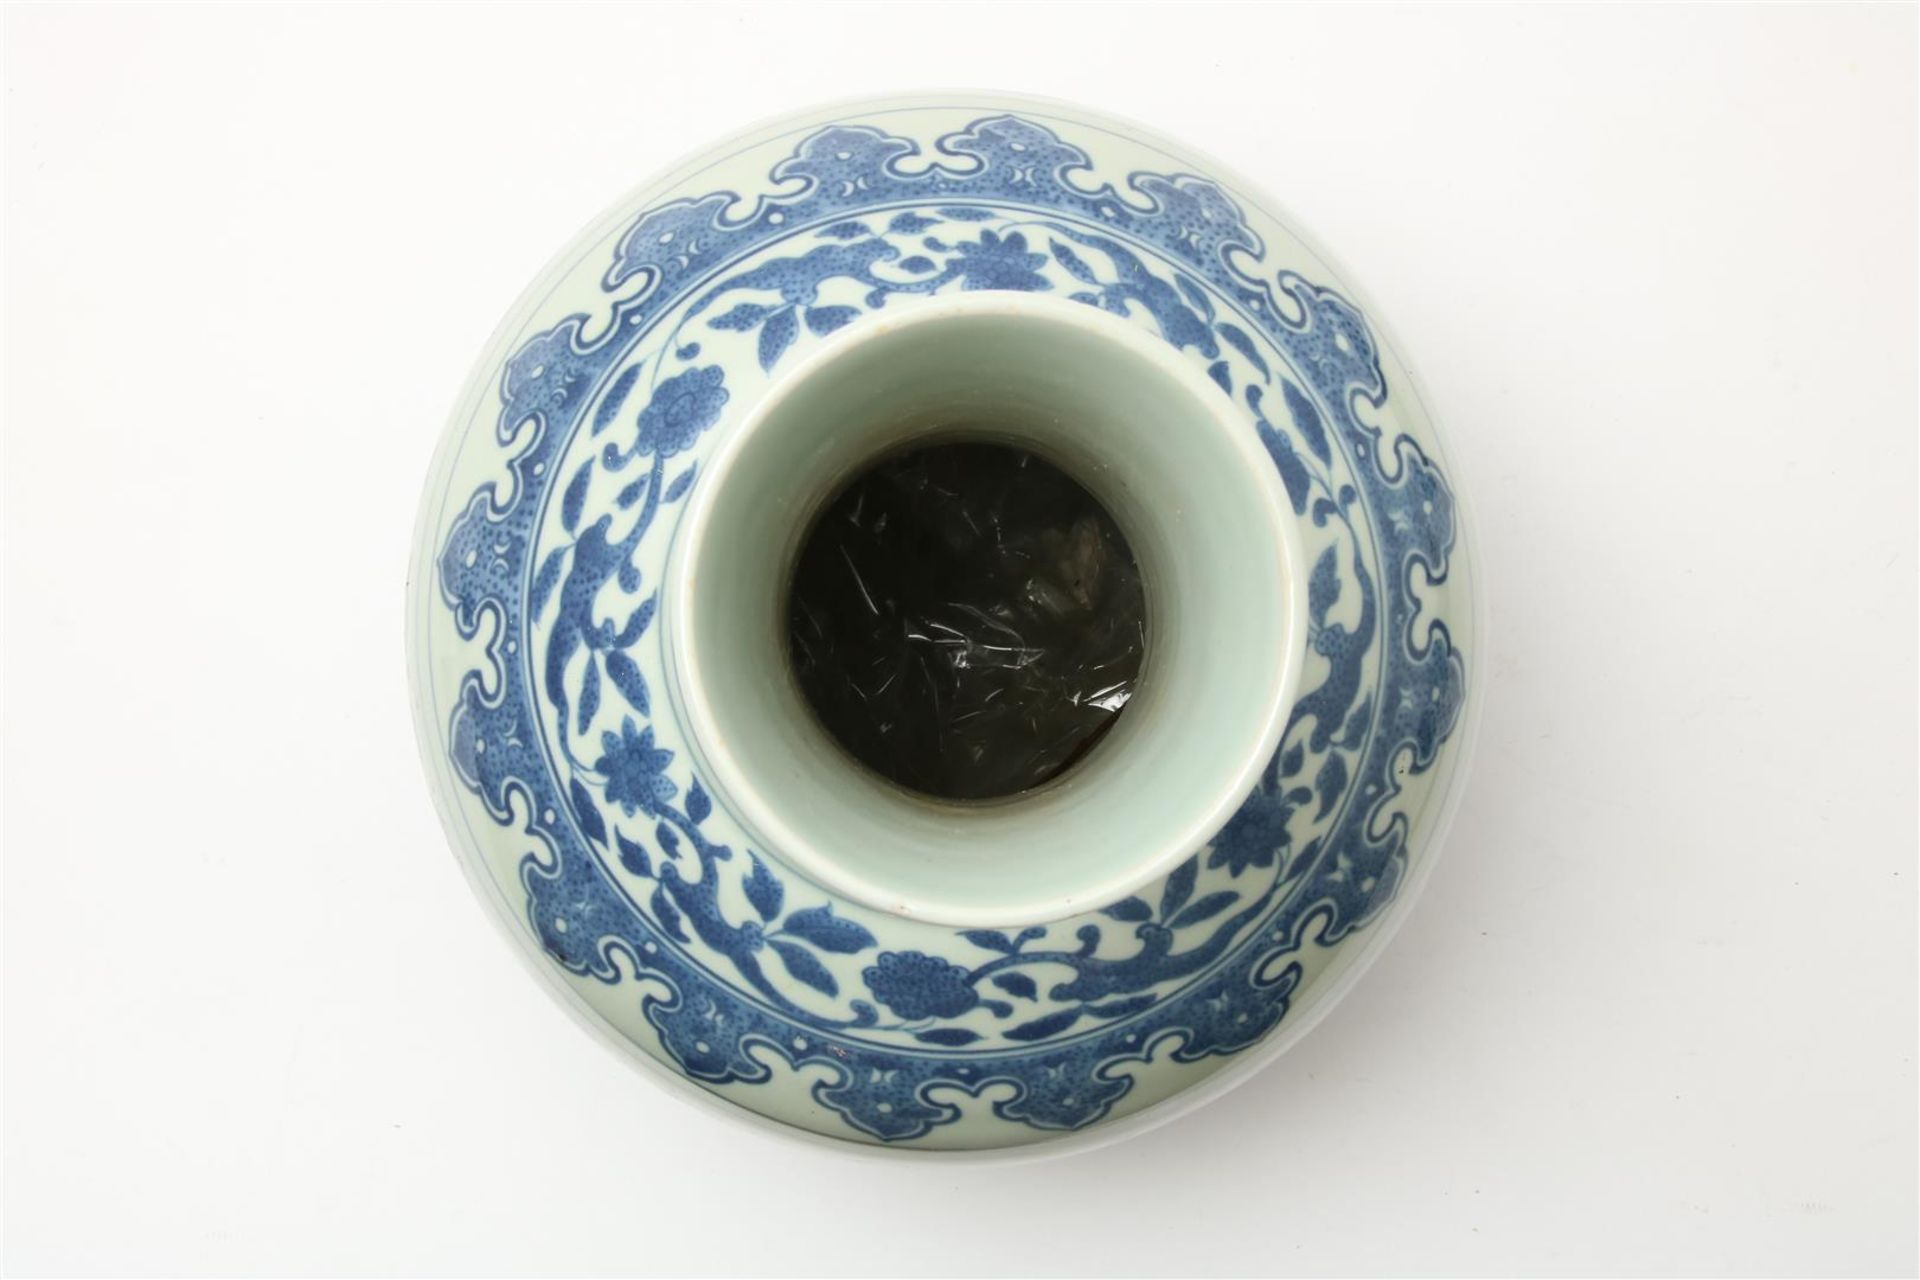 Porcelain Kangxi-style vase with blue/white flower decoration, China 20th century, h. 42 cm. - Image 3 of 4